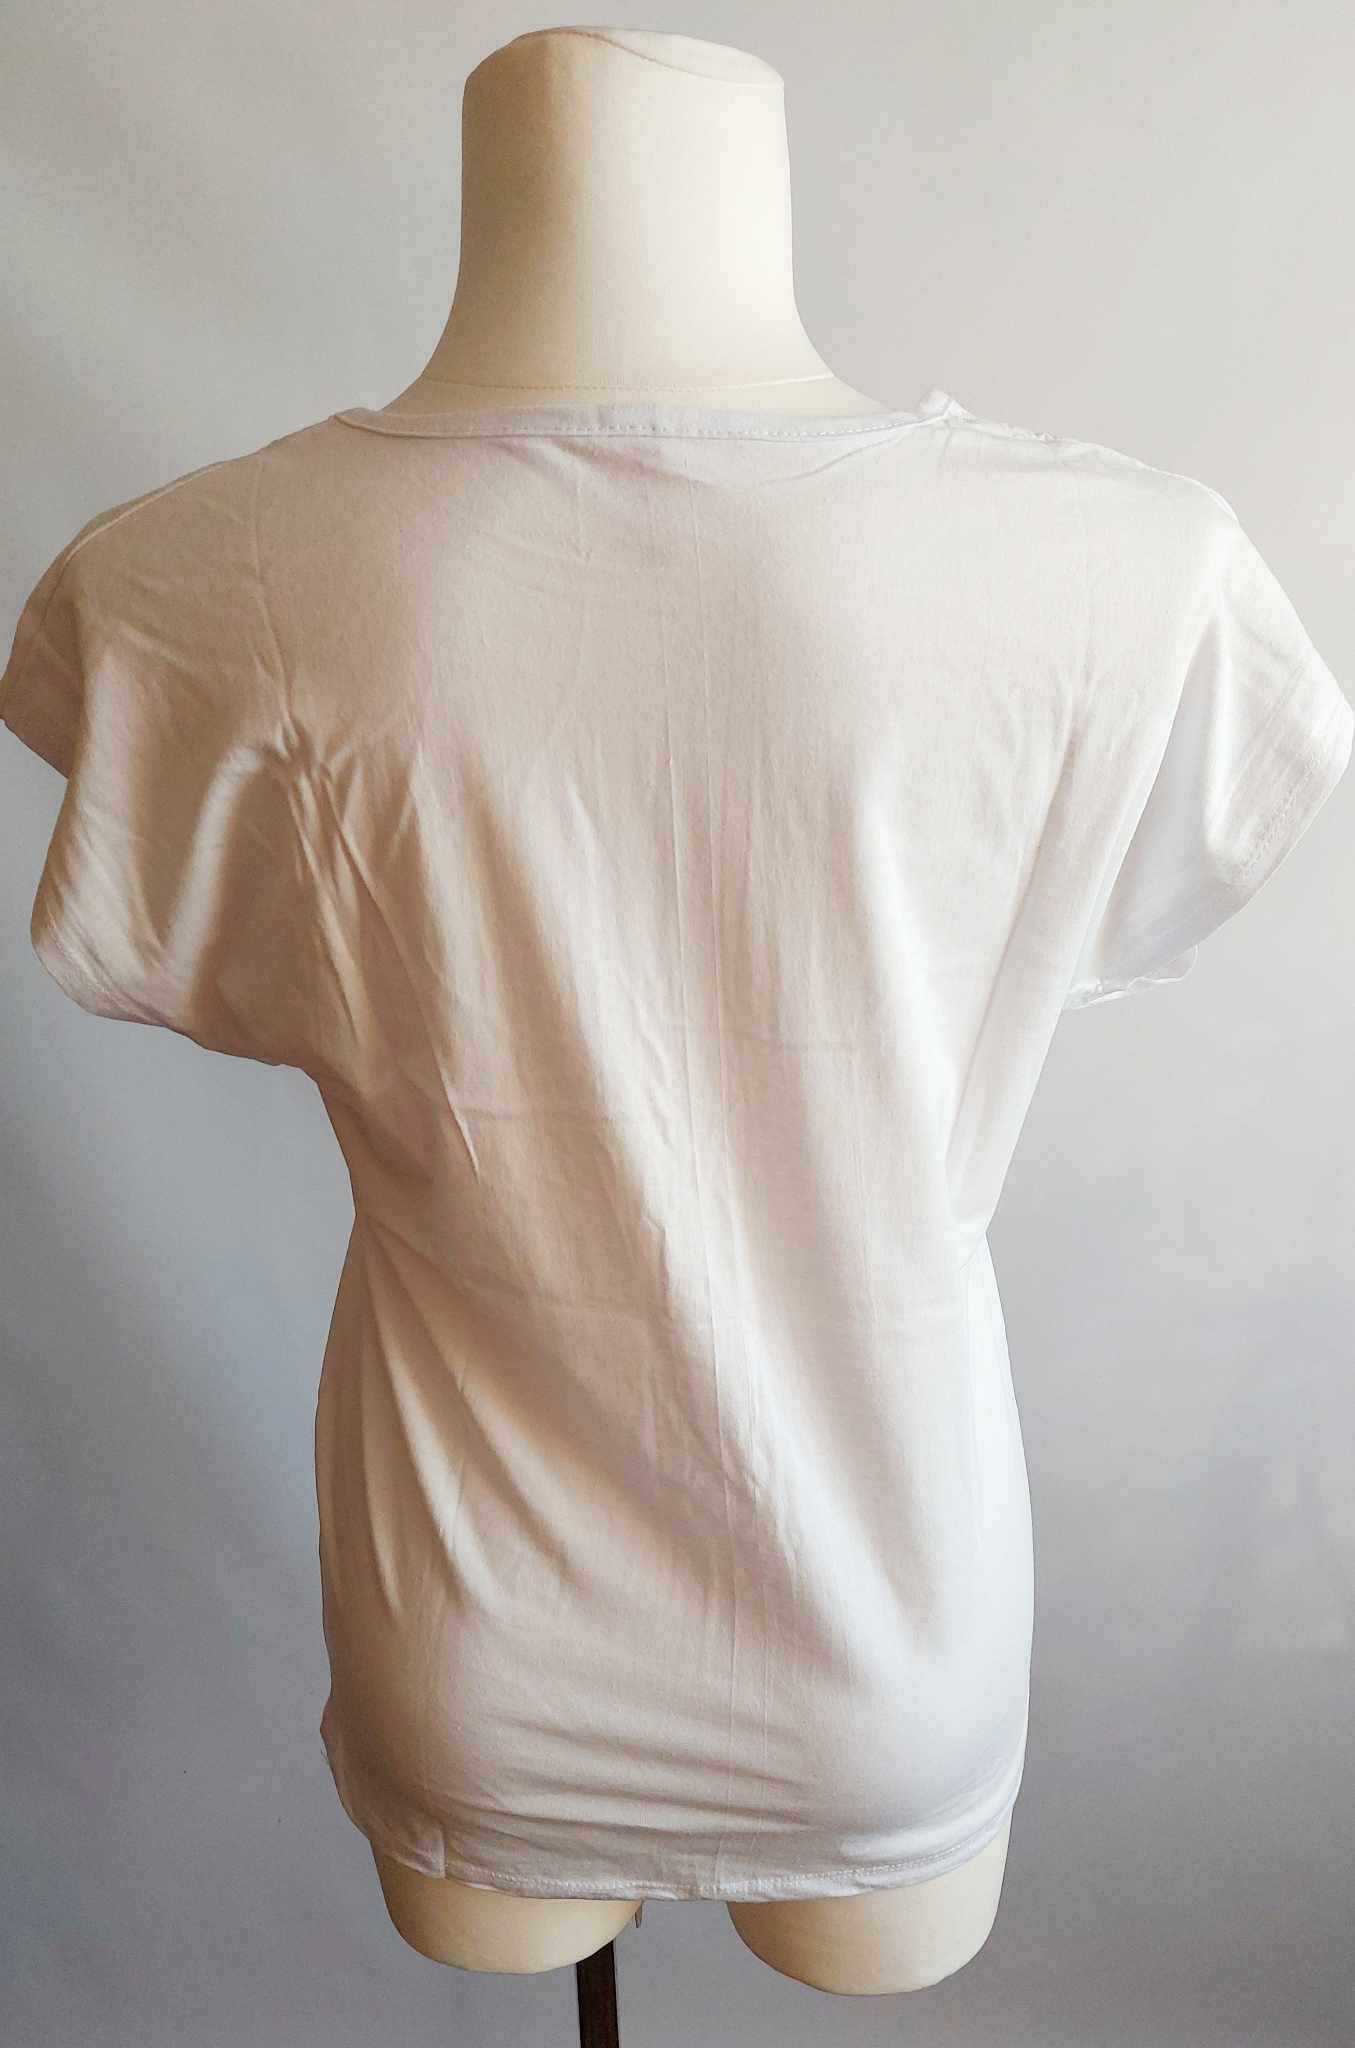 T-shirt damski bluzka damska z nadrukiem ARAS r. XL obwód 100-116 cm